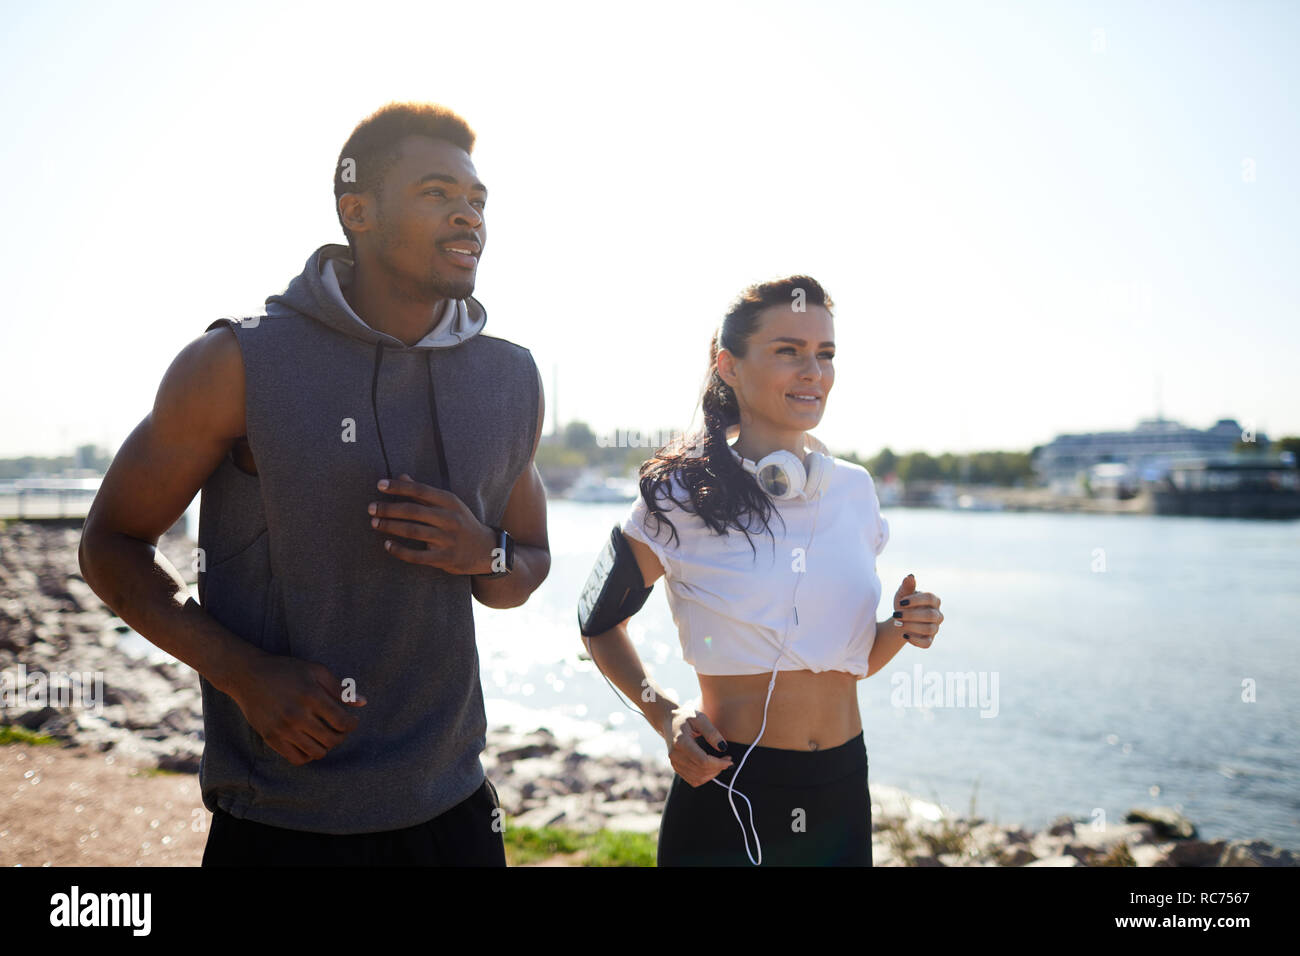 Jolly interracial joggers on coast Stock Photo